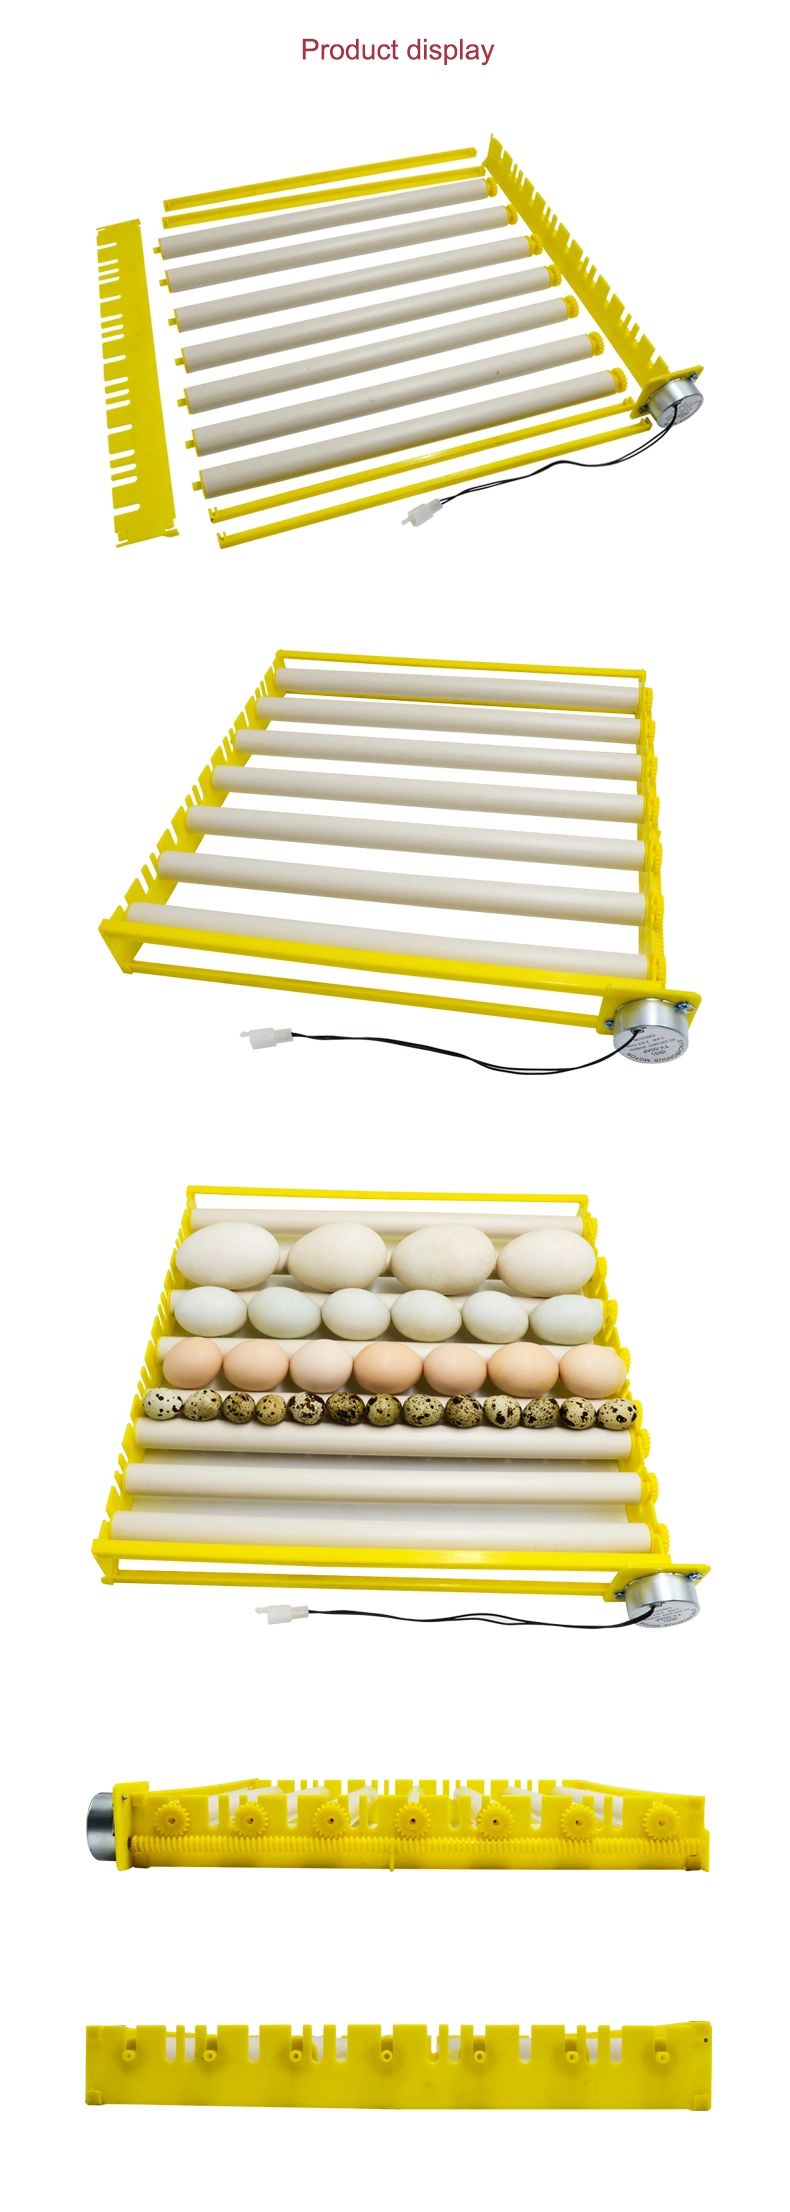 Ht Brand PVC Roll off Tube Design Egg Tray Roller